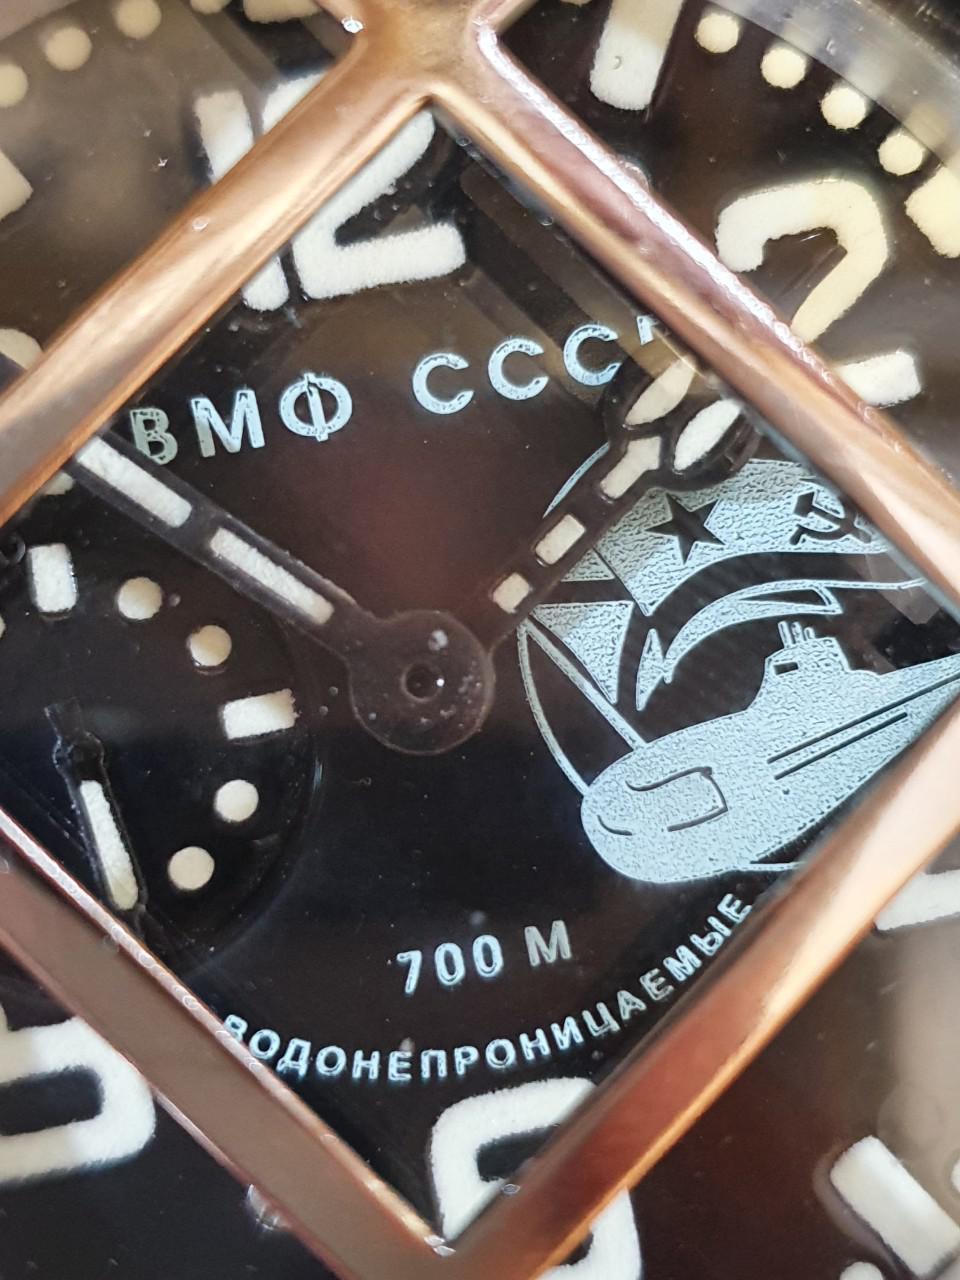 Đồng hồ lặn của Hải quân Liên Xô: Huyền thoại về người chinh phục mặt nước của Liên Xô